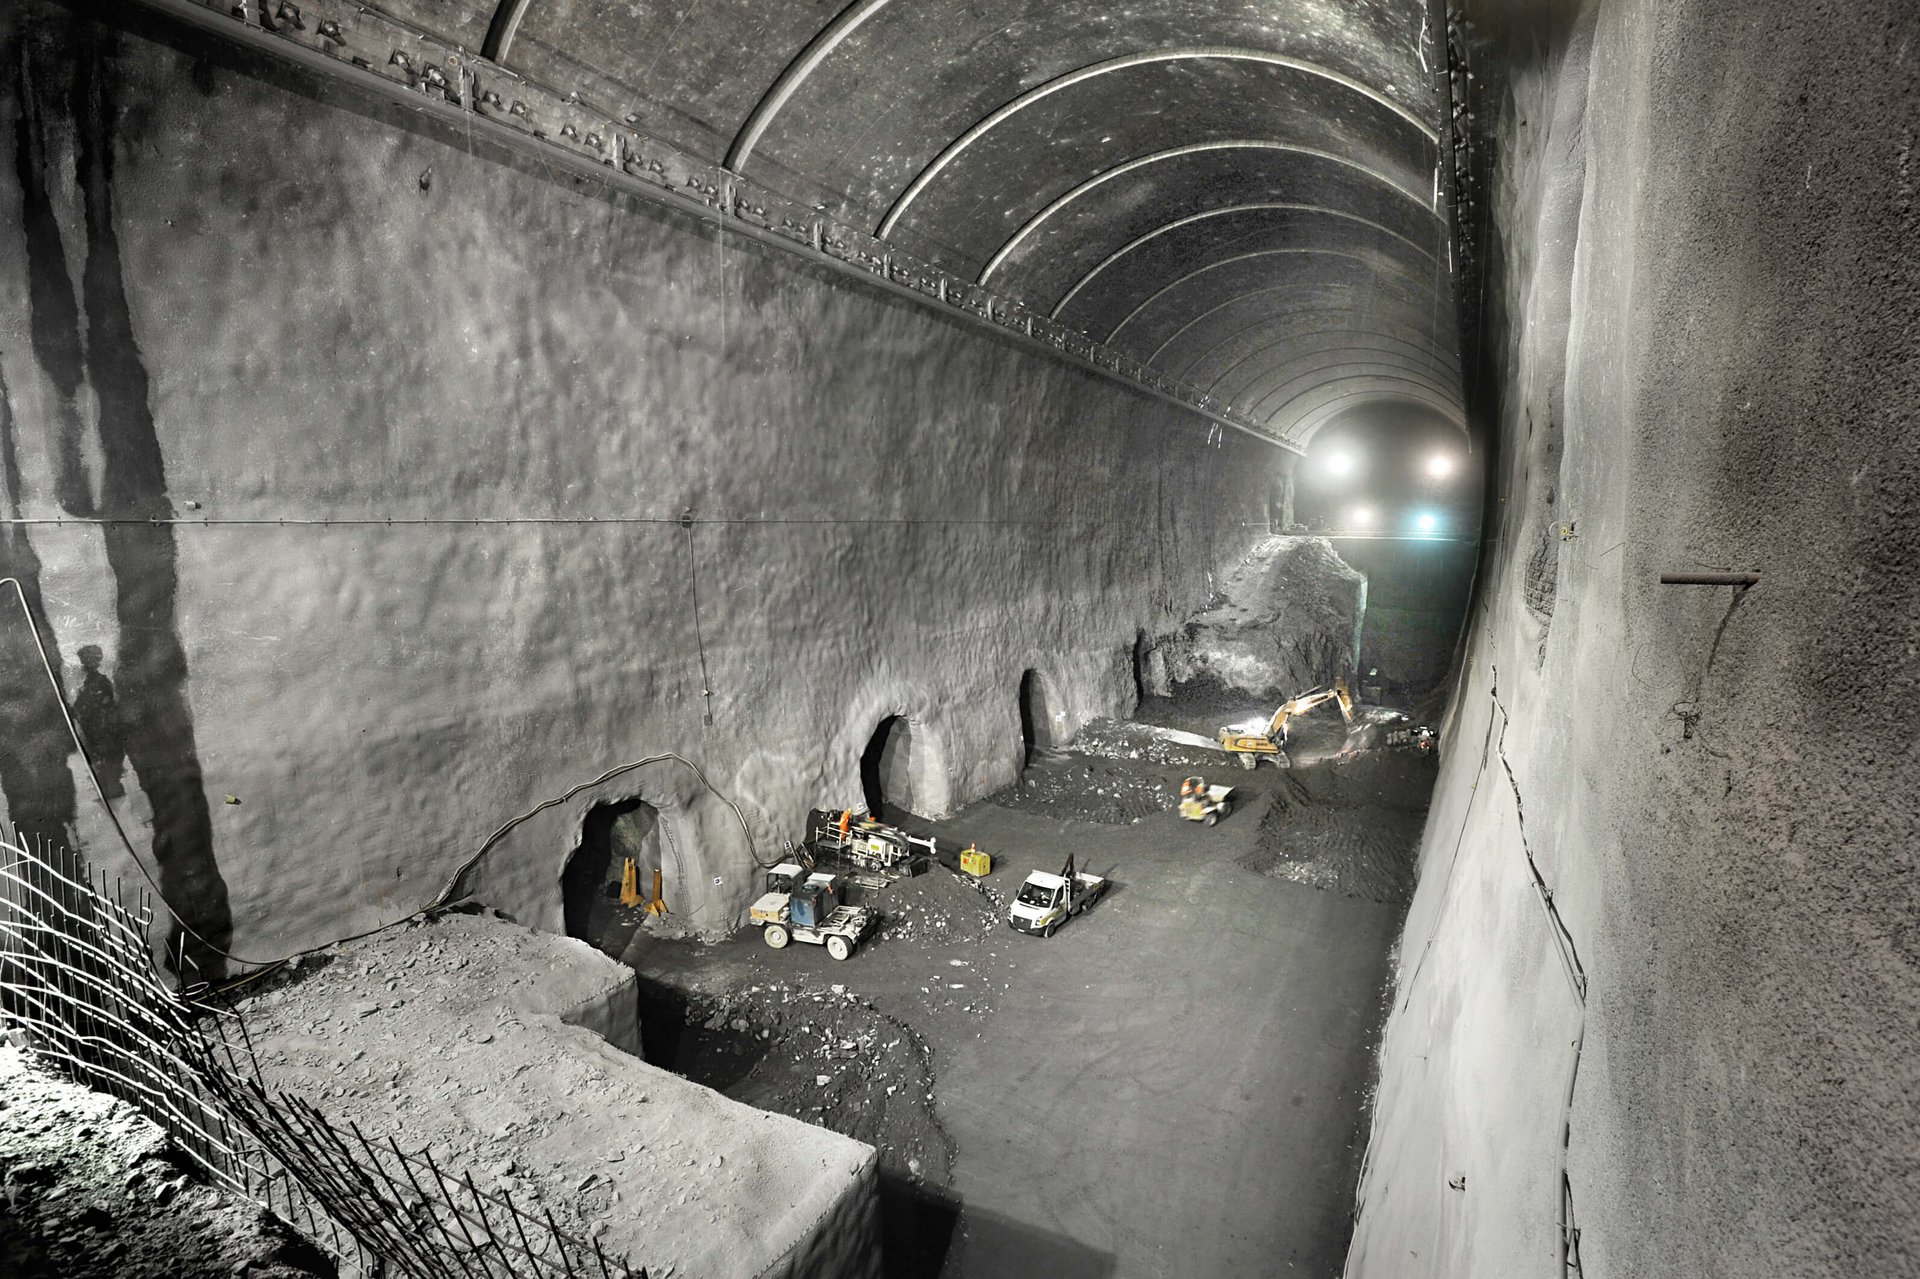 Typische Szene aus dem Bau eines Kraftwerks. Der Tunnel ist ein langer, dunkler und feuchter Raum. Die Wände des Tunnels sind aus Beton und werden beleuchtet. Am Boden des Tunnels liegen Schienen, auf denen der Bagger fährt.